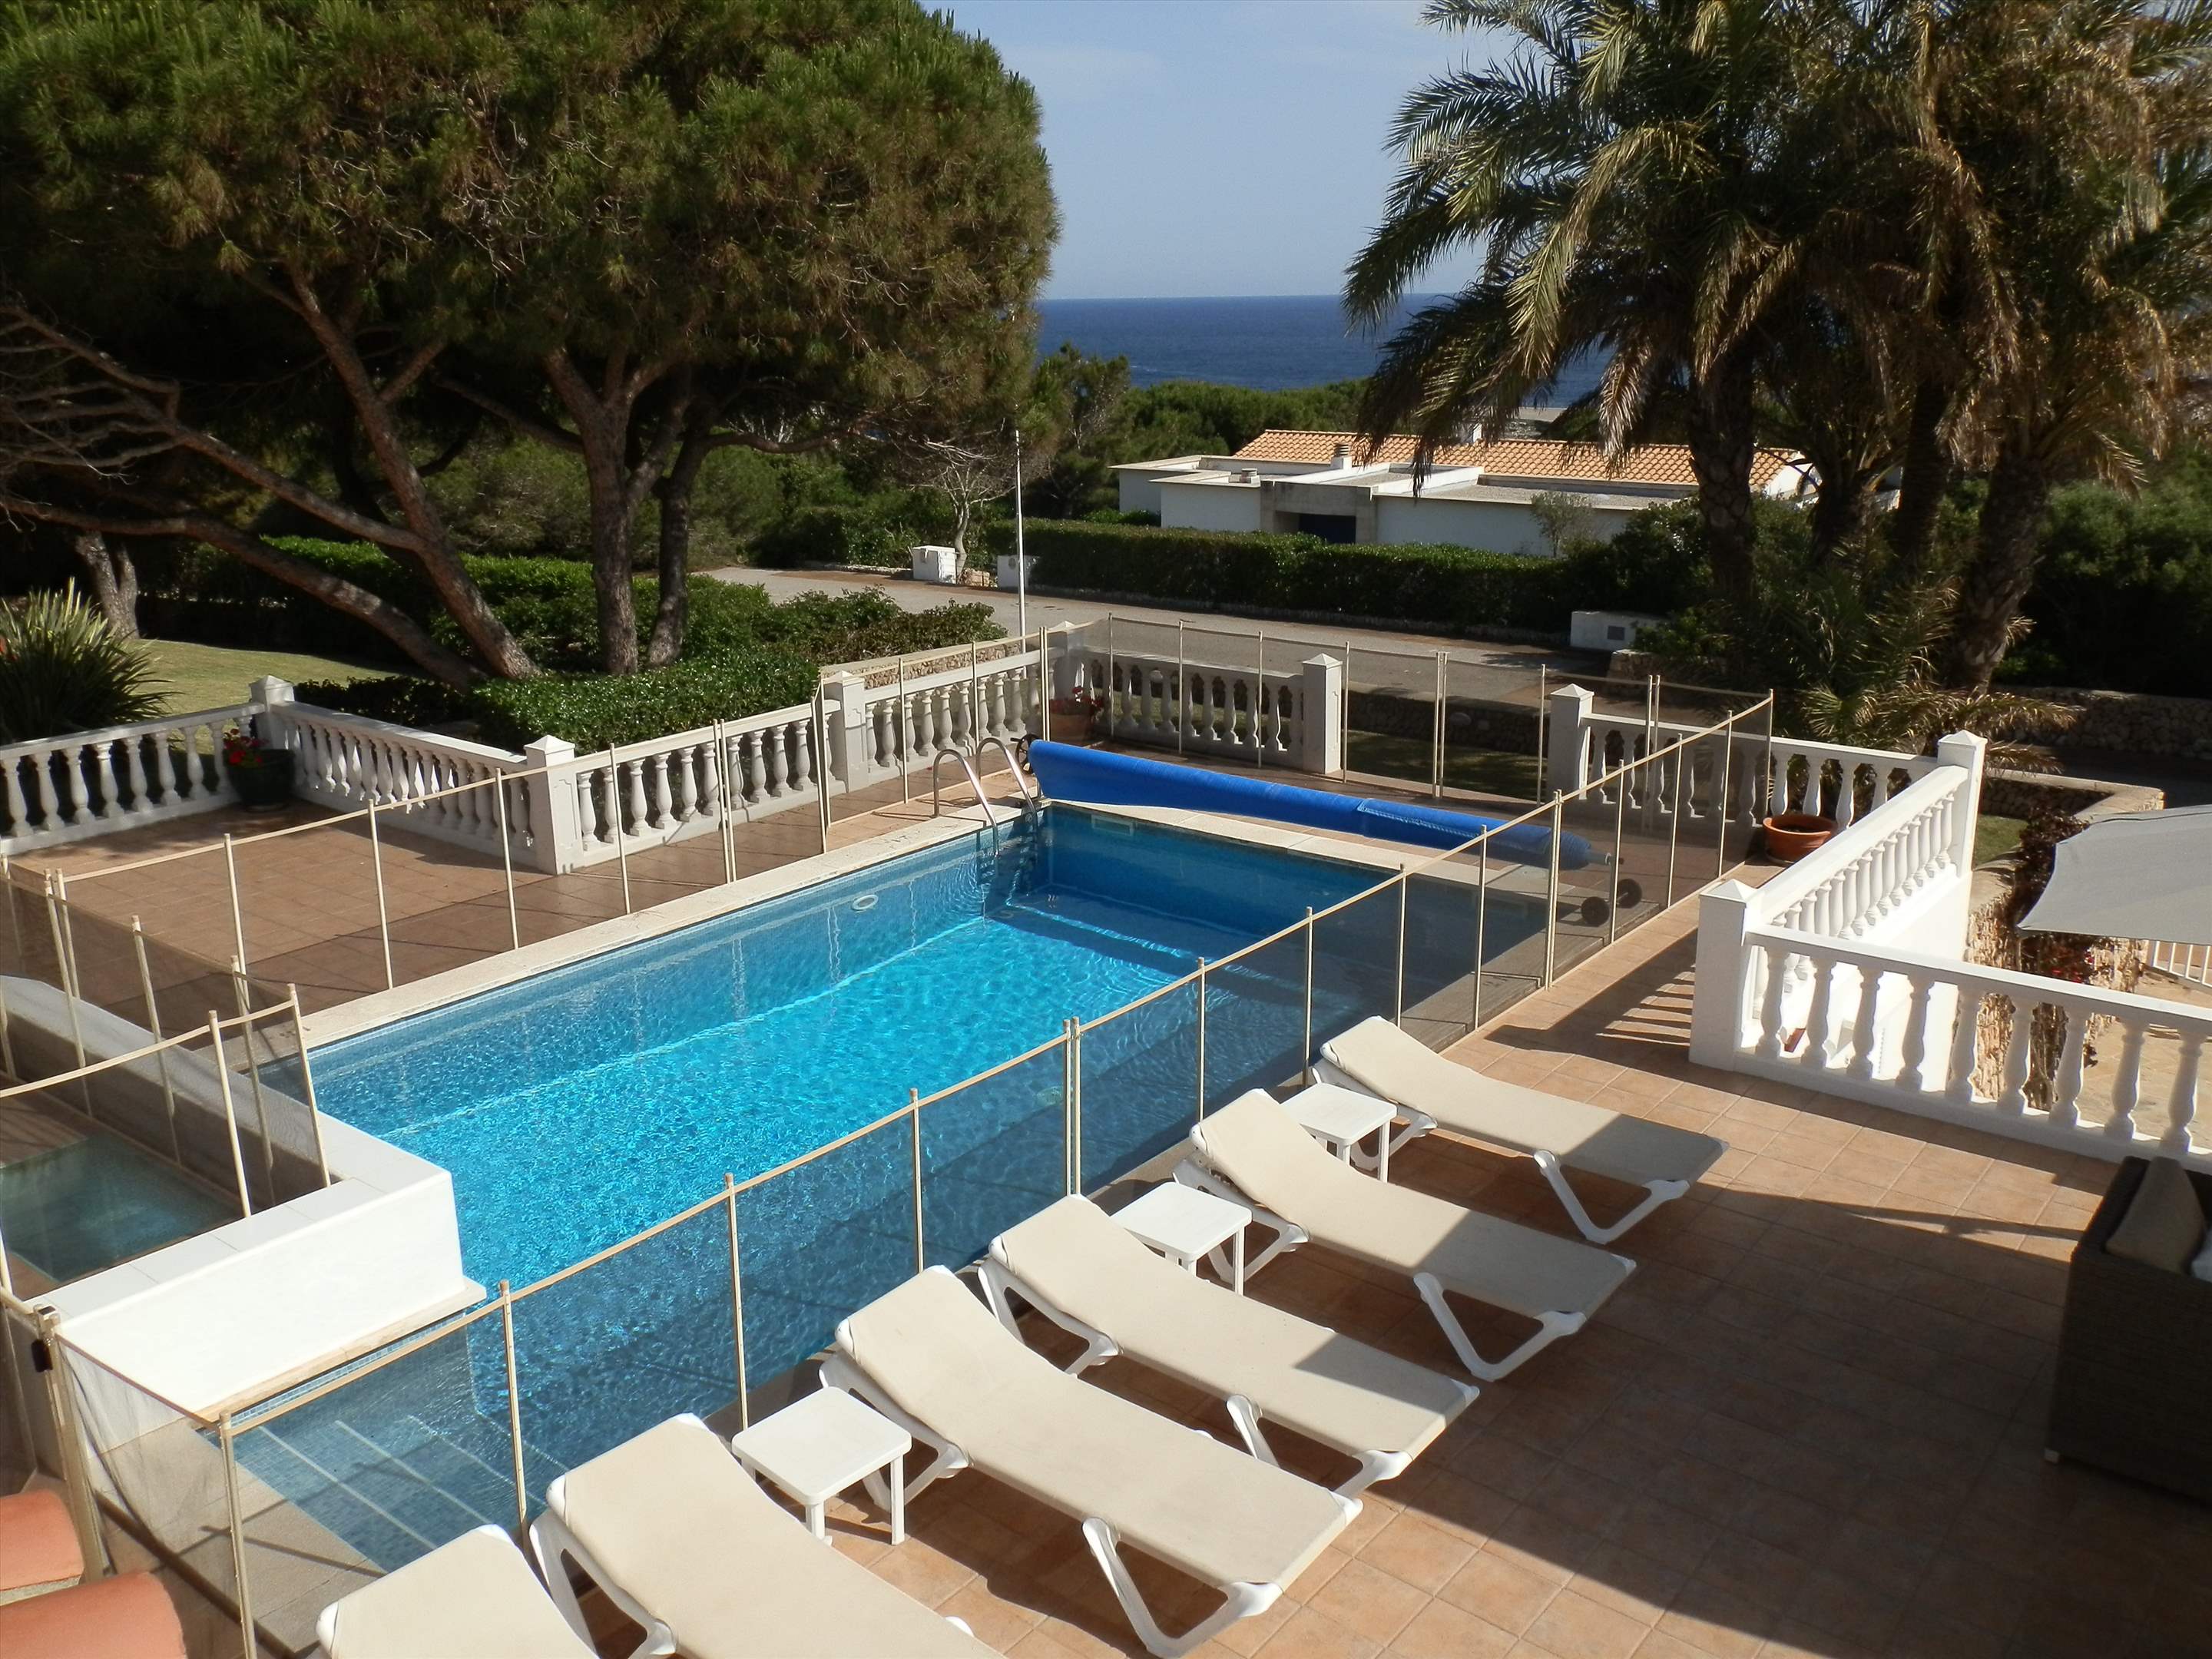 Casa del Mar de Ana-Cristo, 5 Bedroom rate, 5 bedroom villa in Mahon, San Luis & South East, Menorca Photo #1